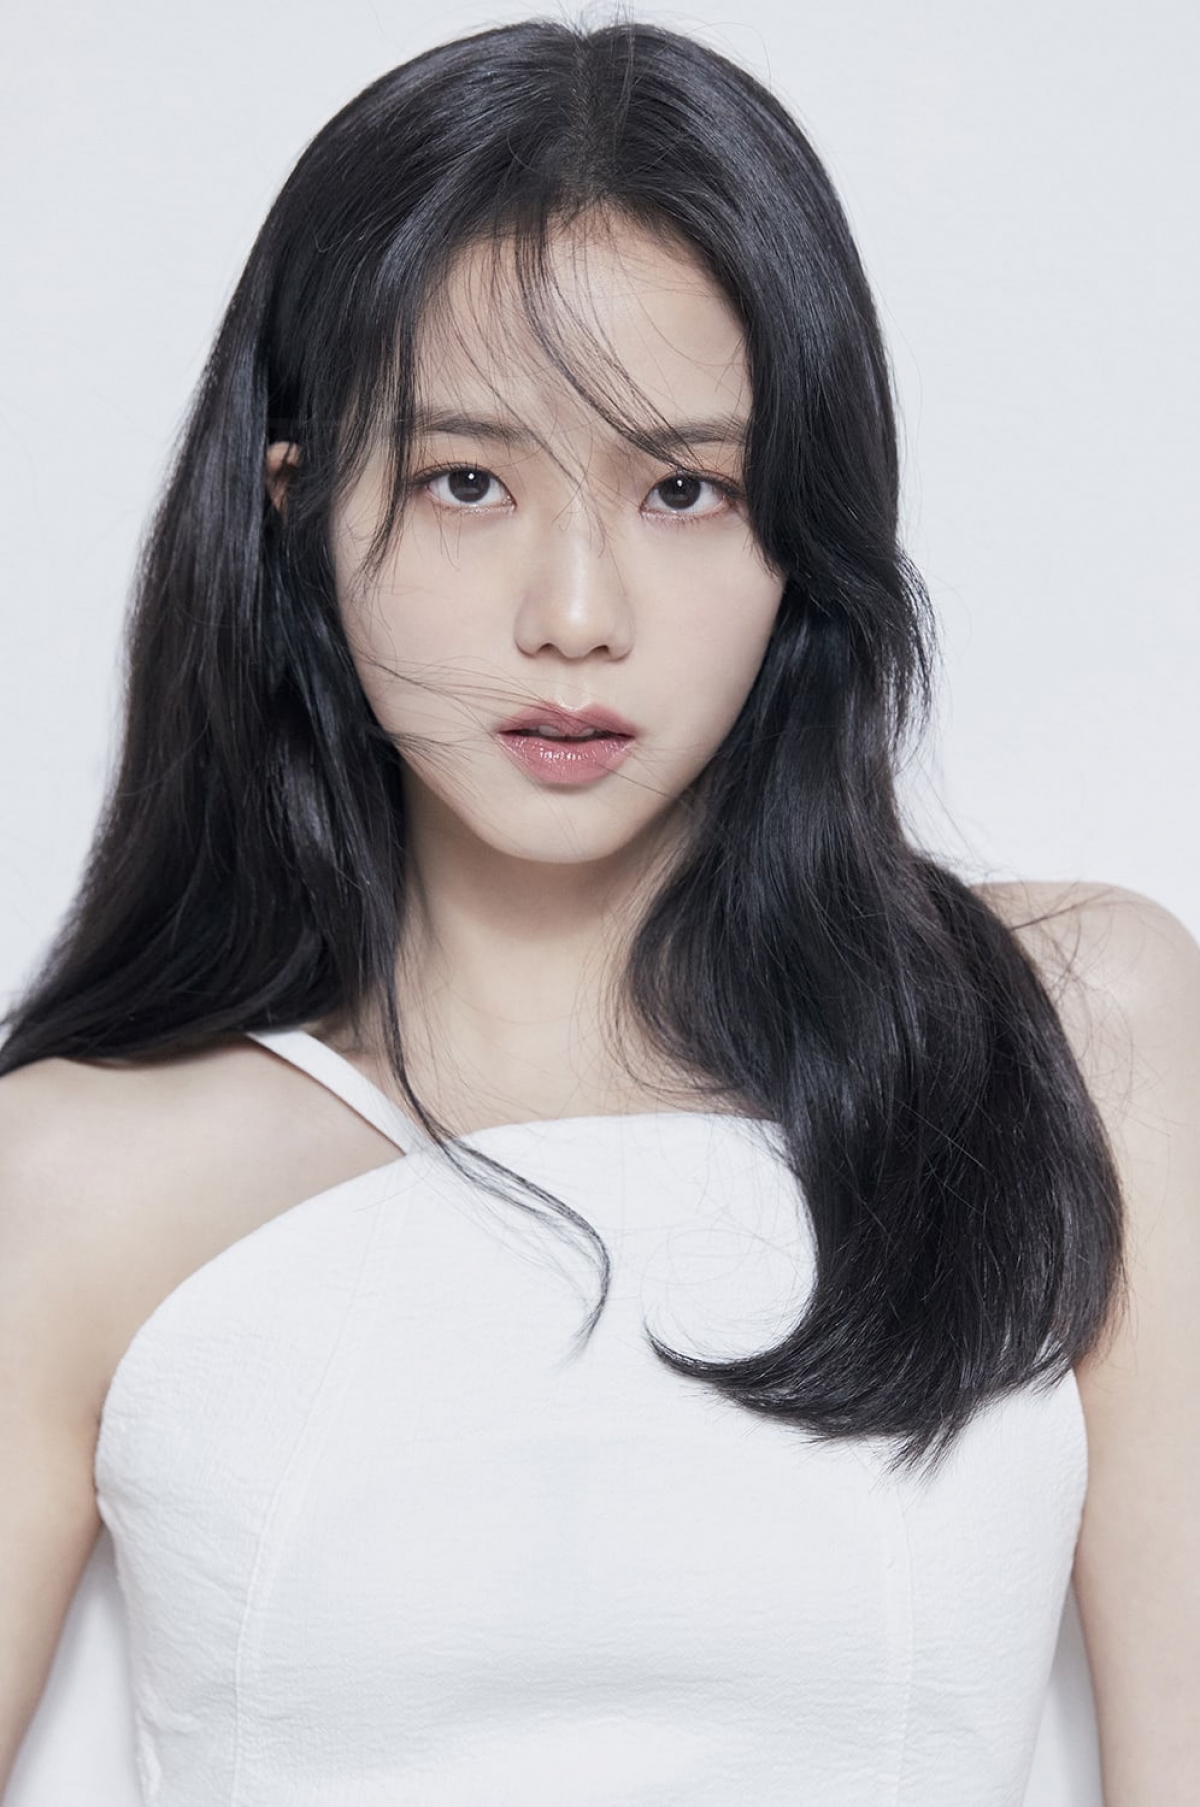 Triệu người chọn nữ diễn viên đẹp nhất xứ Hàn: Jisoo cho Son Ye ...